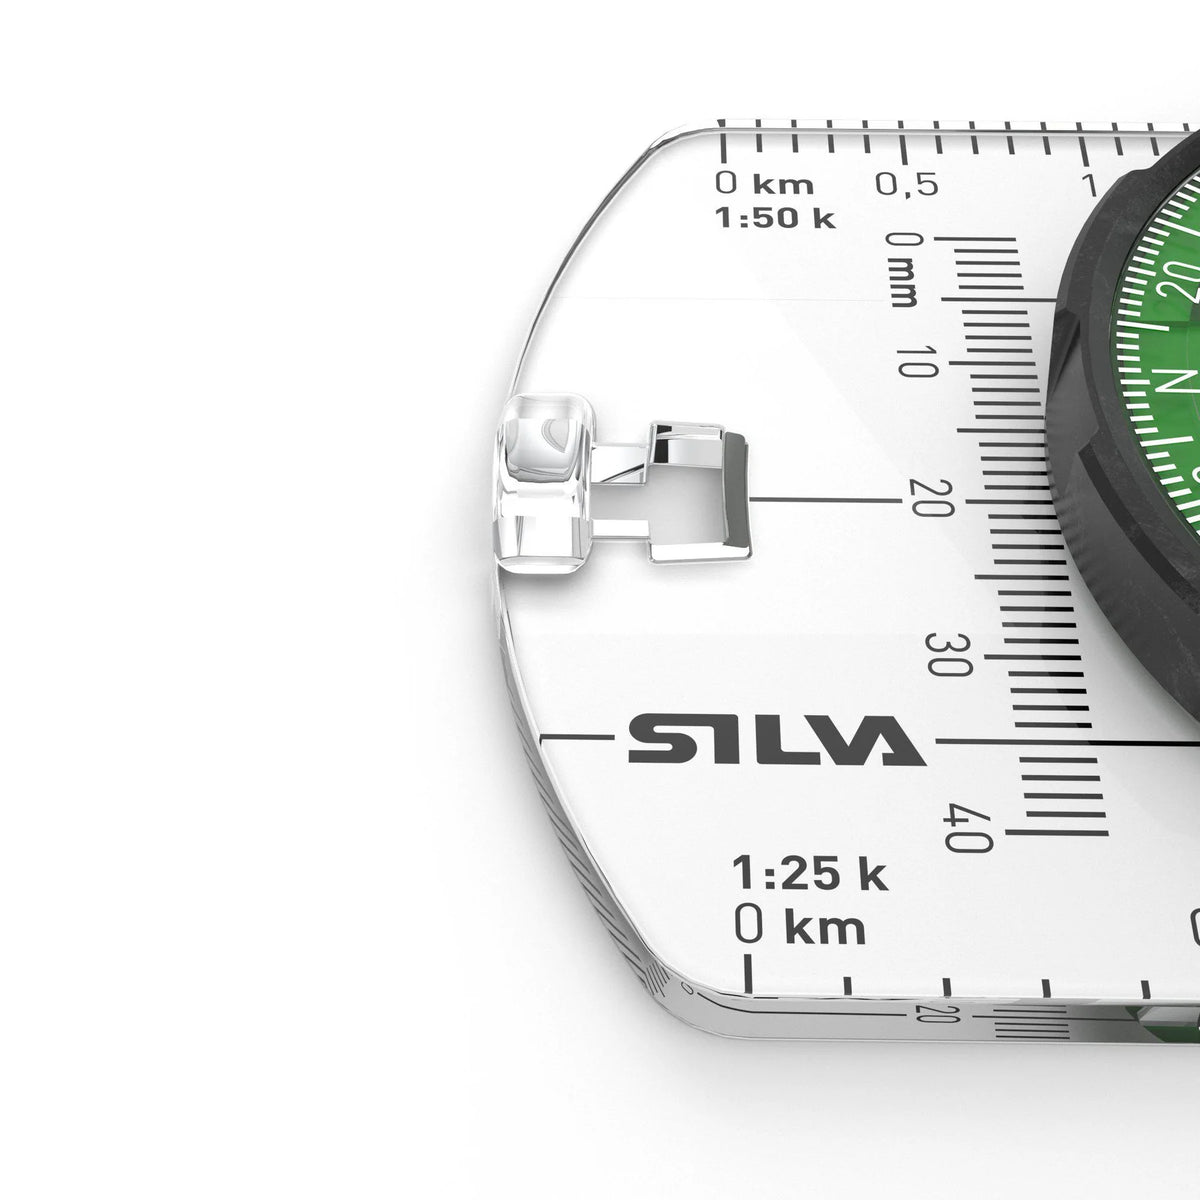 Silva Ranger S Compass